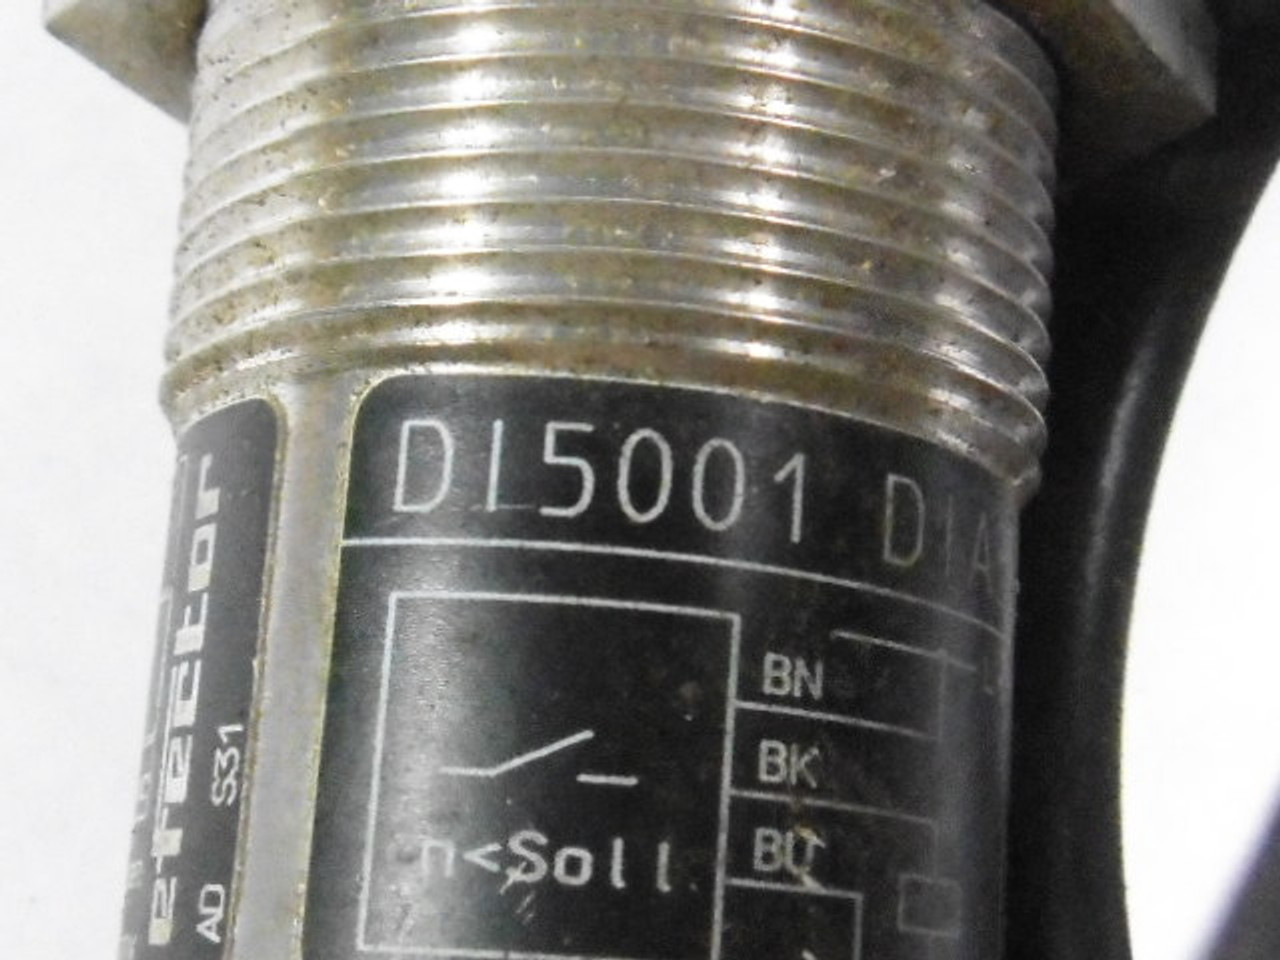 IFM DI5001 Efector Proximity Sensor DIA3010-ZPKG 10-36VDC 250mA 77" Cable USED